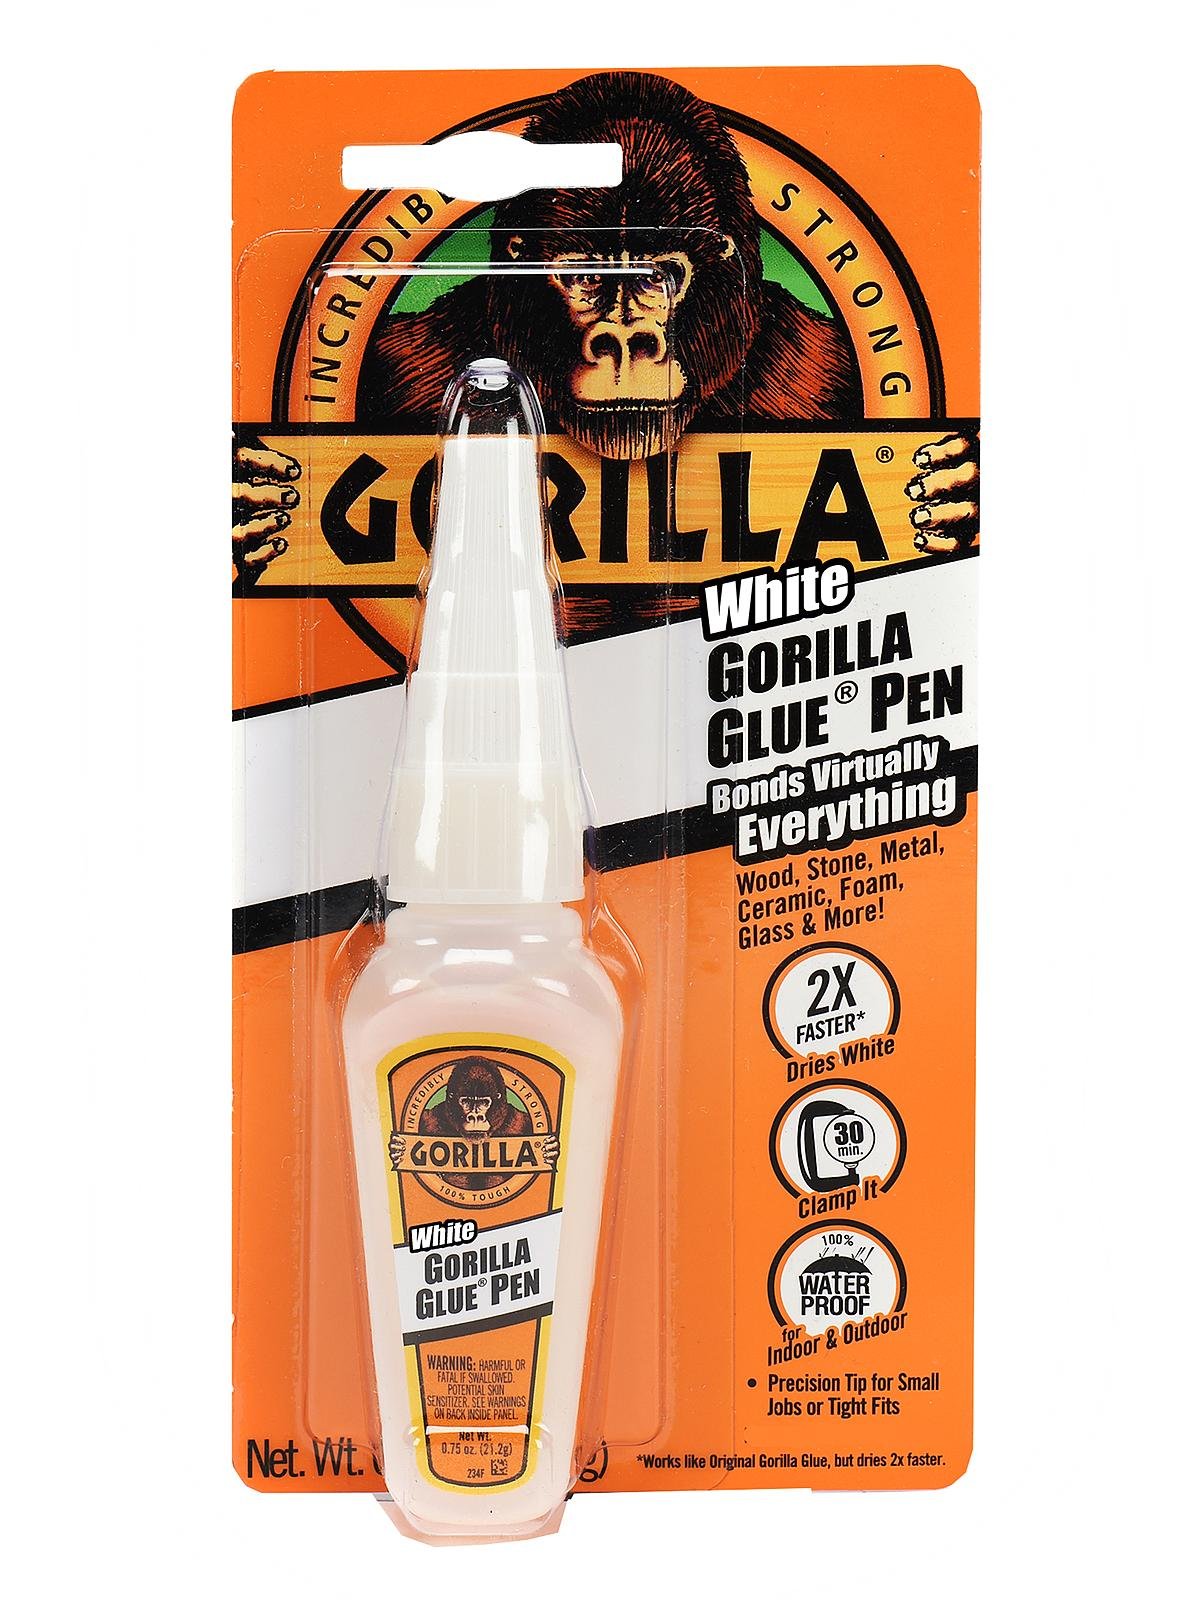 The Gorilla Glue Company - White Glue